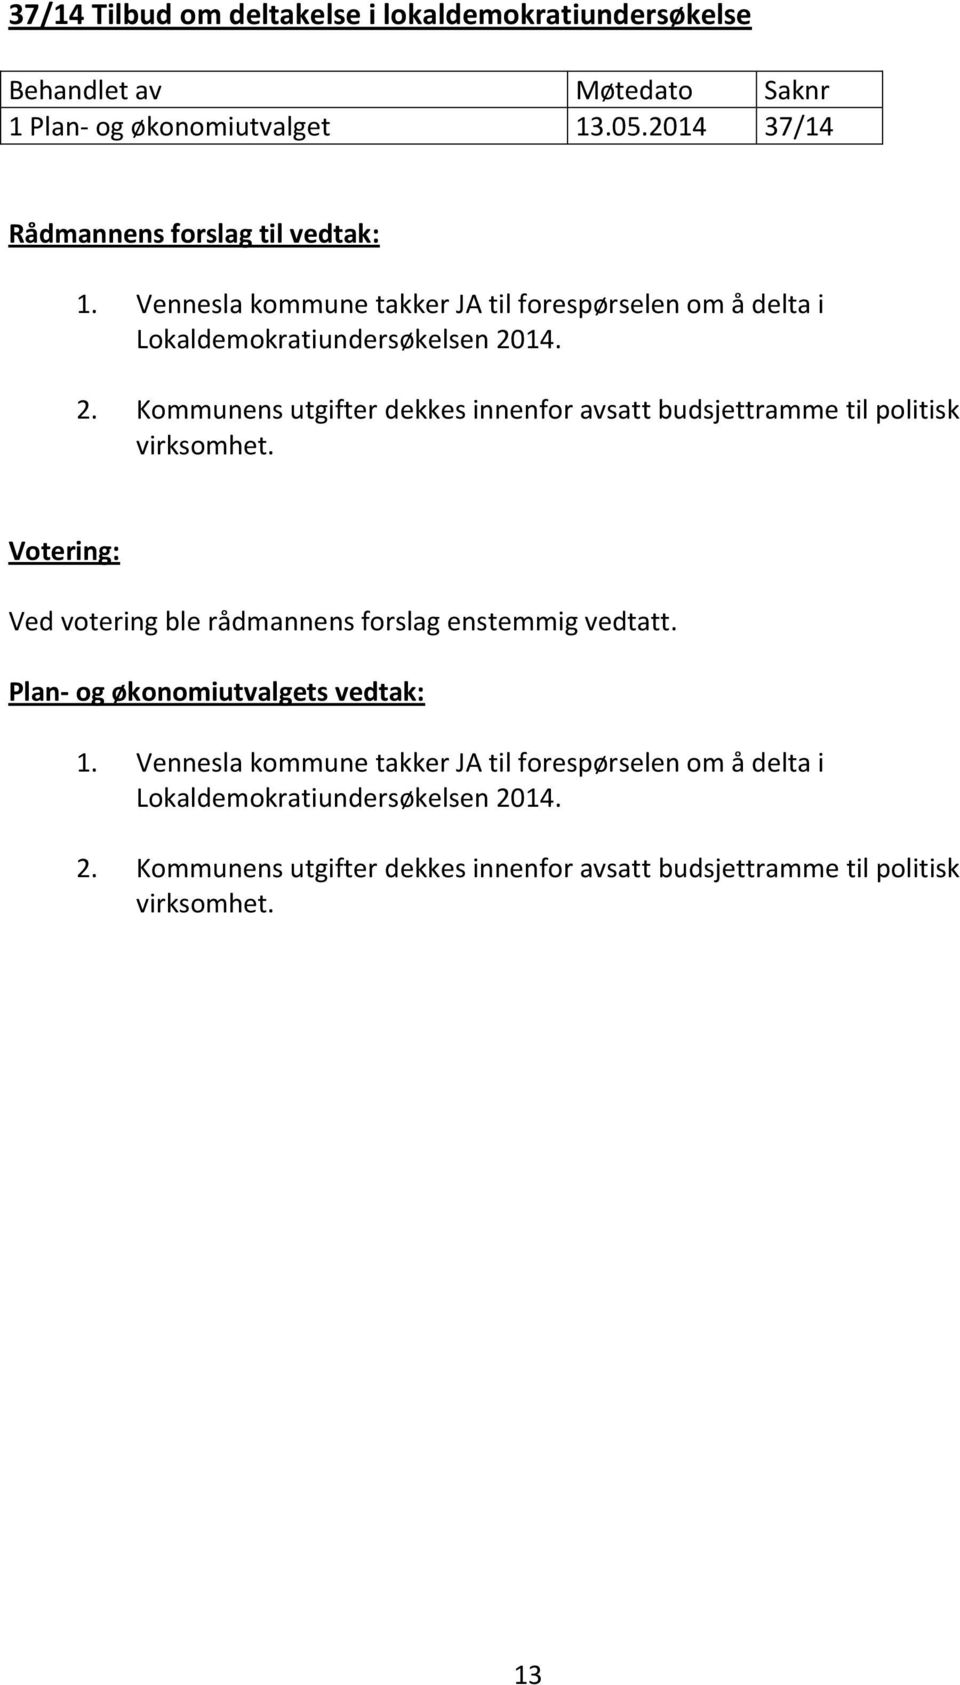 Vennesla kommune takker JA til forespørselen om å delta i Lokaldemokratiundersøkelsen 20